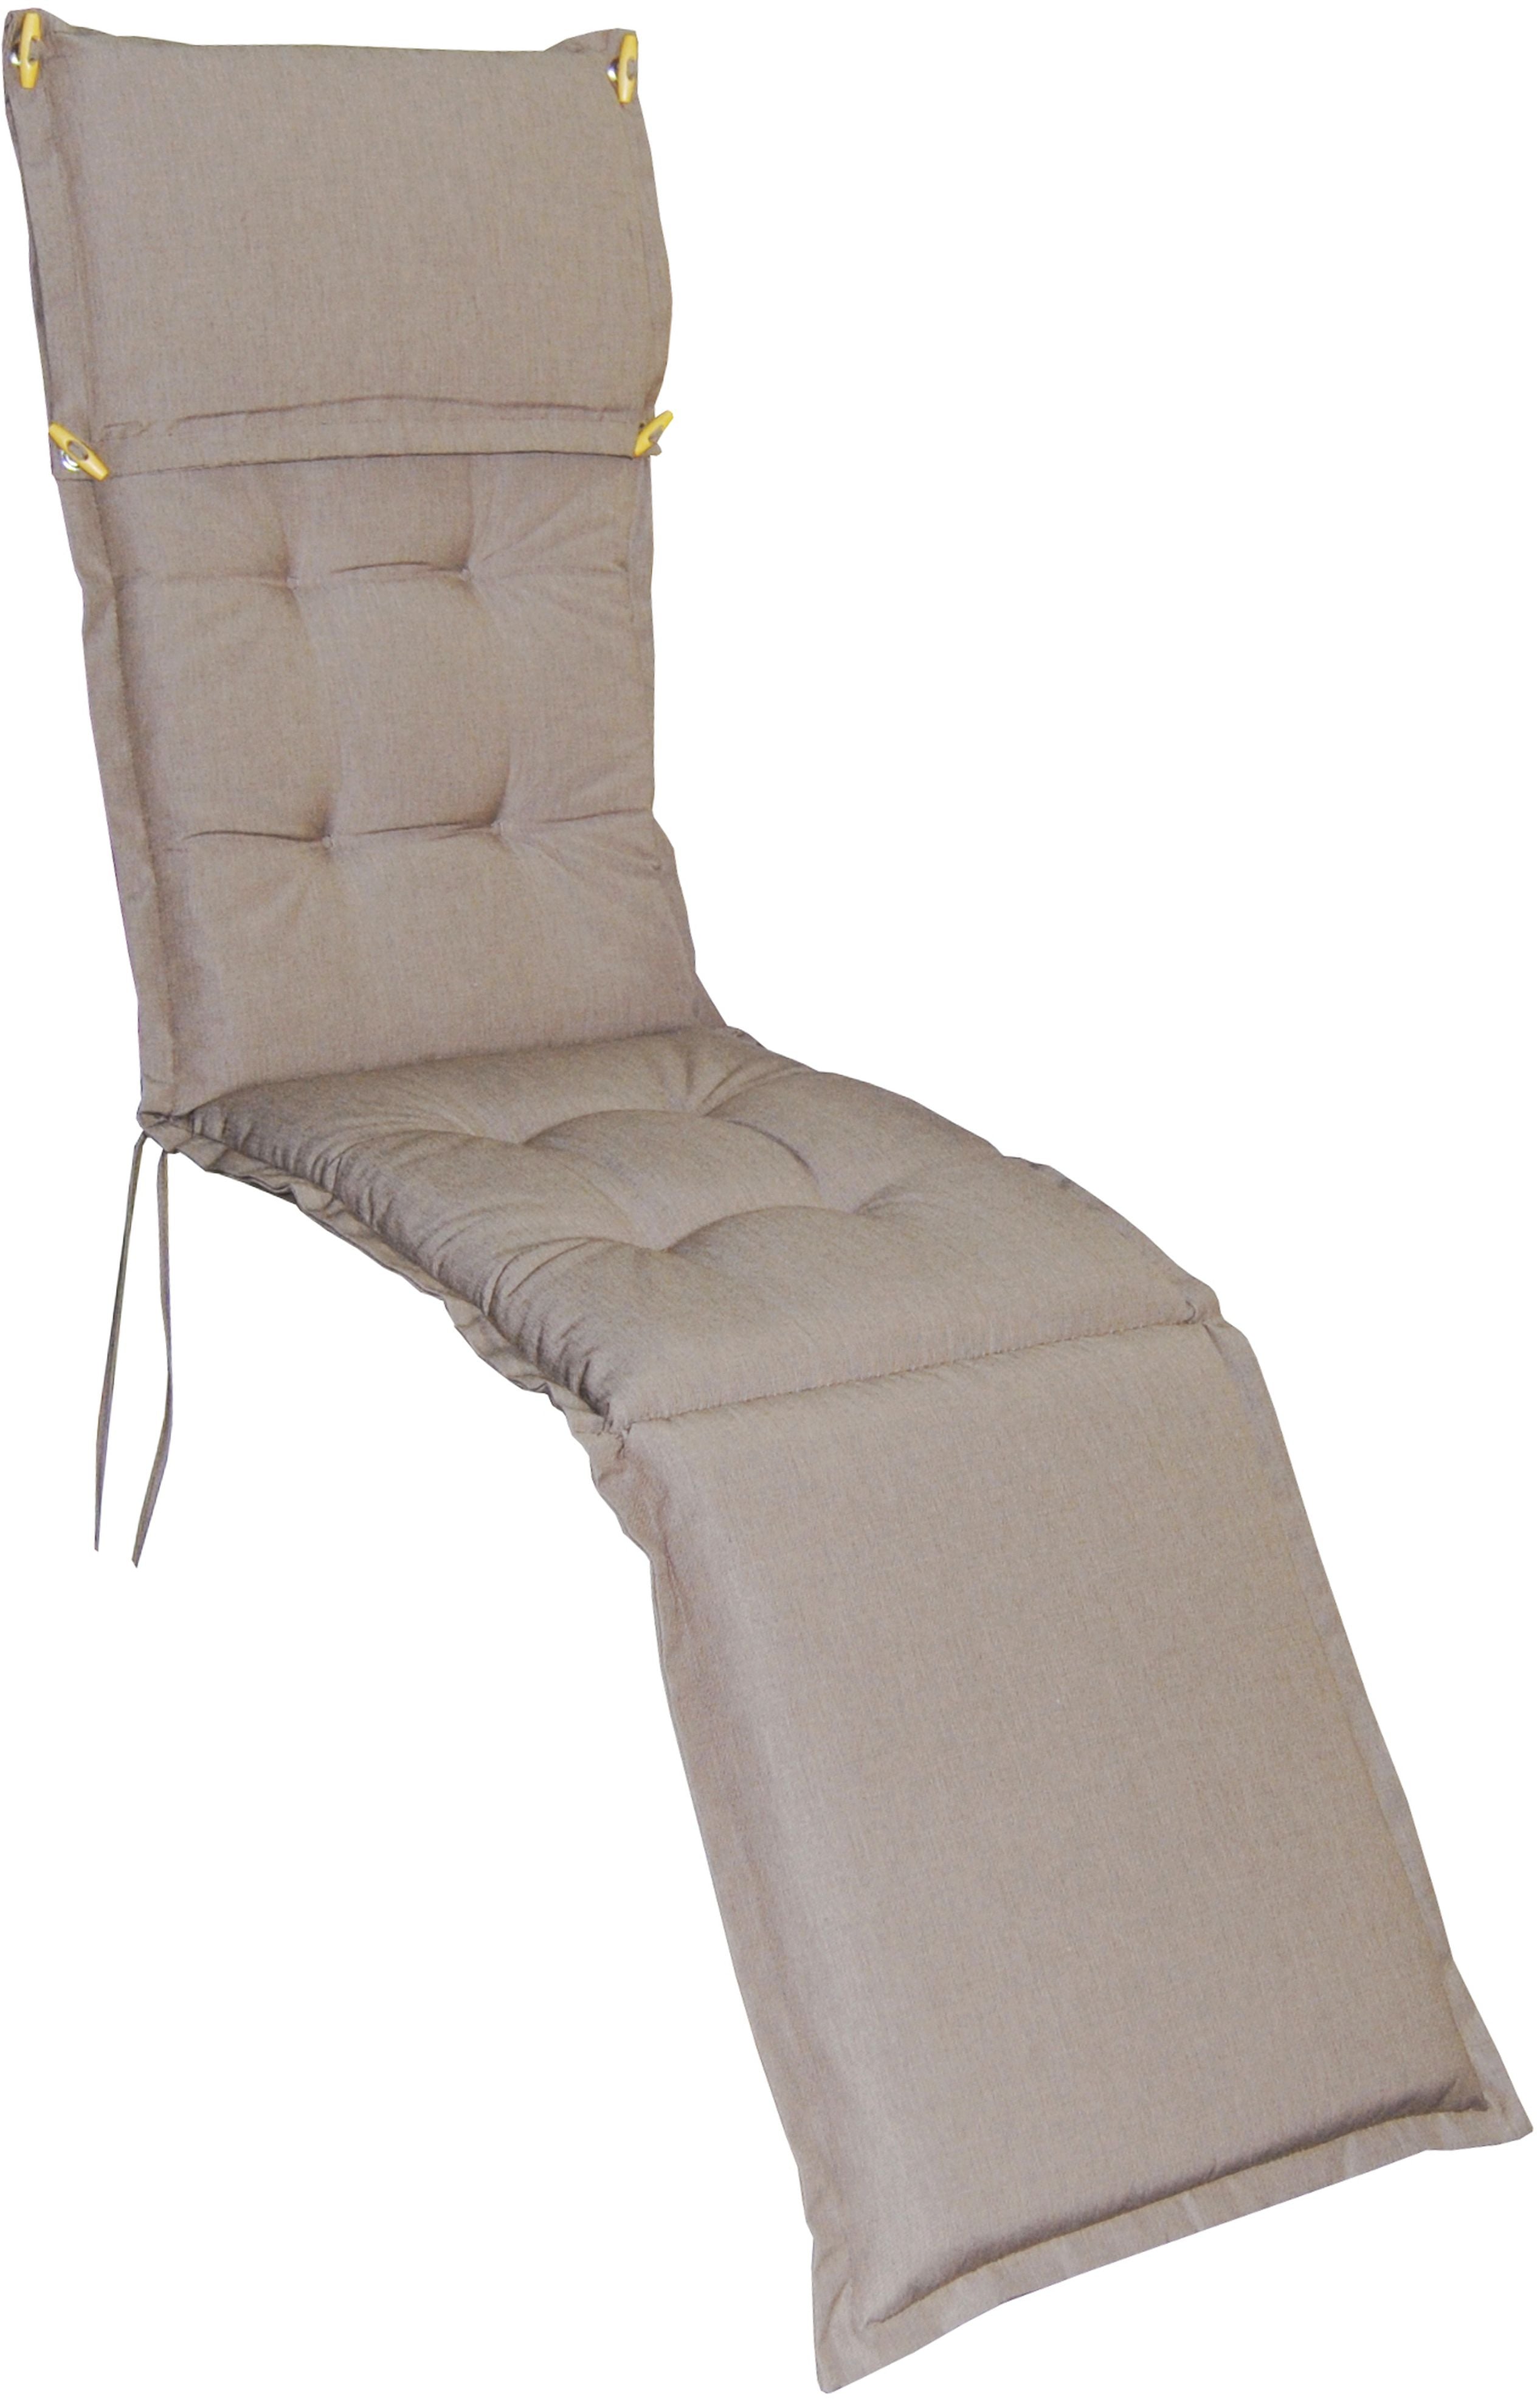 Premium Polster Kenia für Deckchair